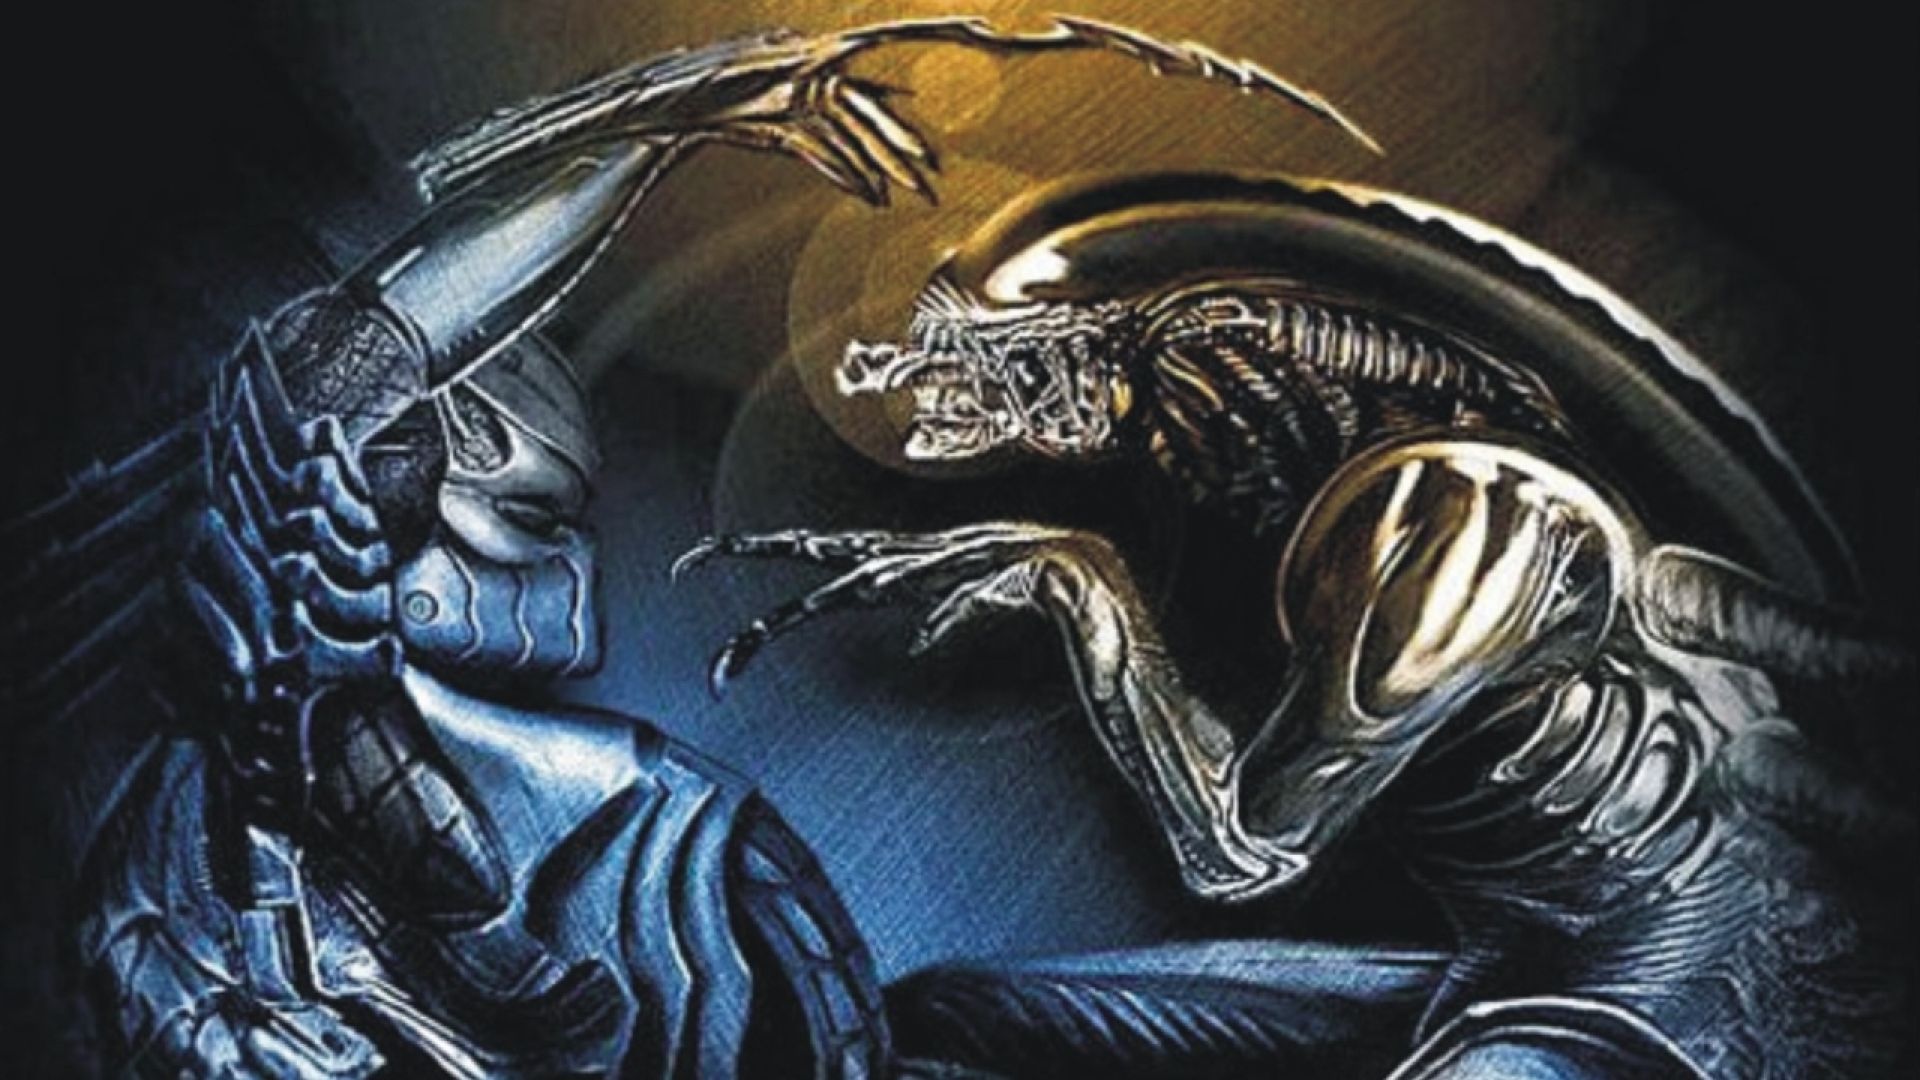 download alien vs predator 2004 full movie in tamil 720p